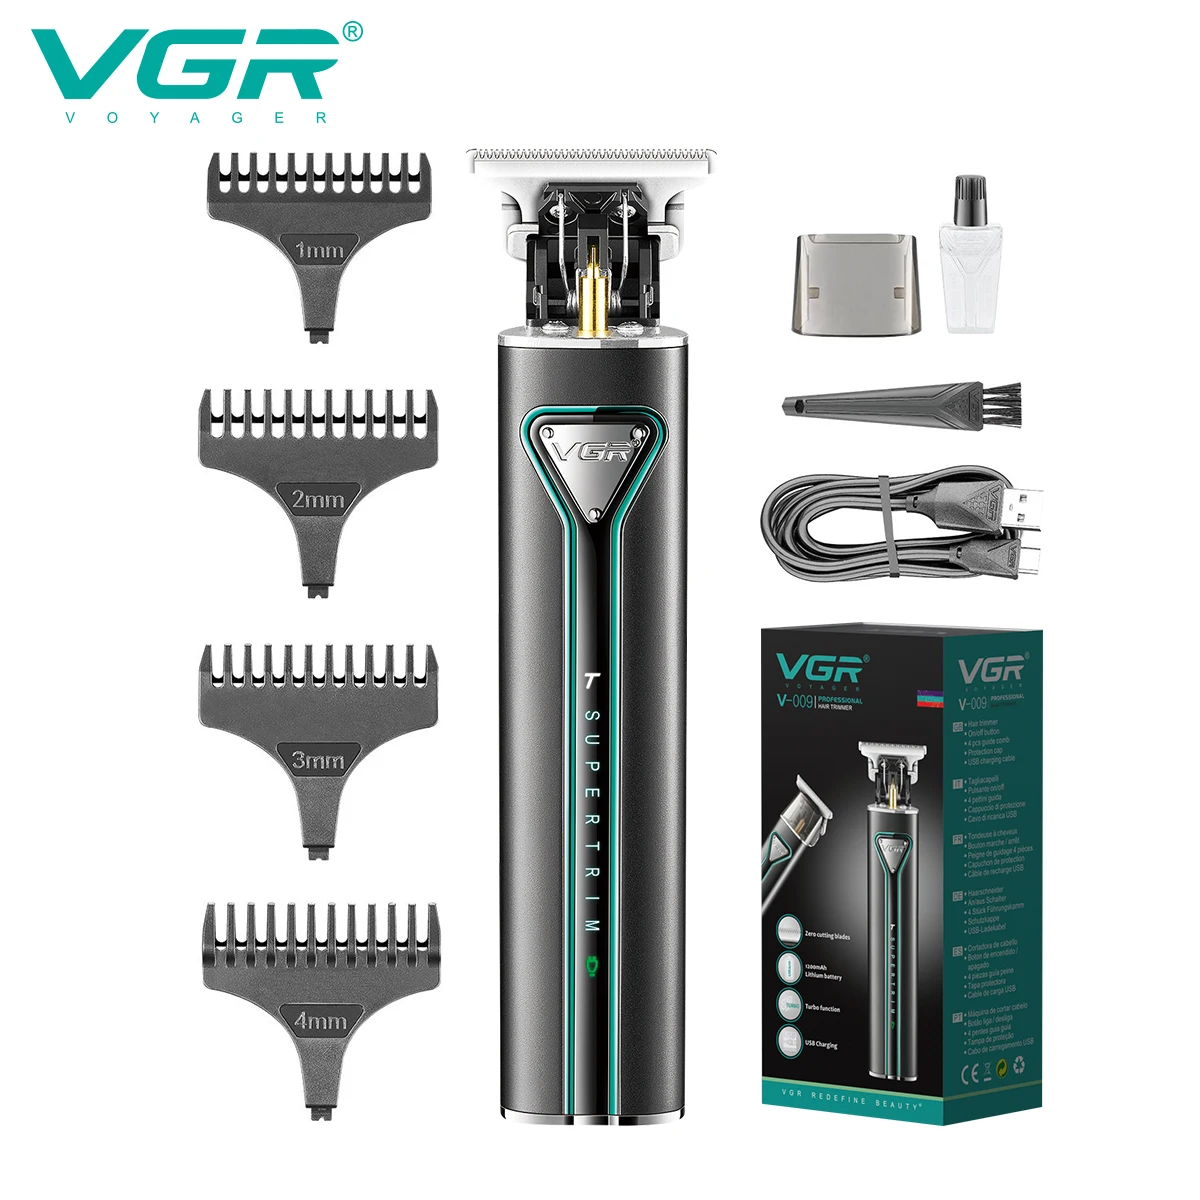 VGR T9 Hair Cutting Machine Rechargeable Hair Clipper Metal Hair Trimmer - $16.07+